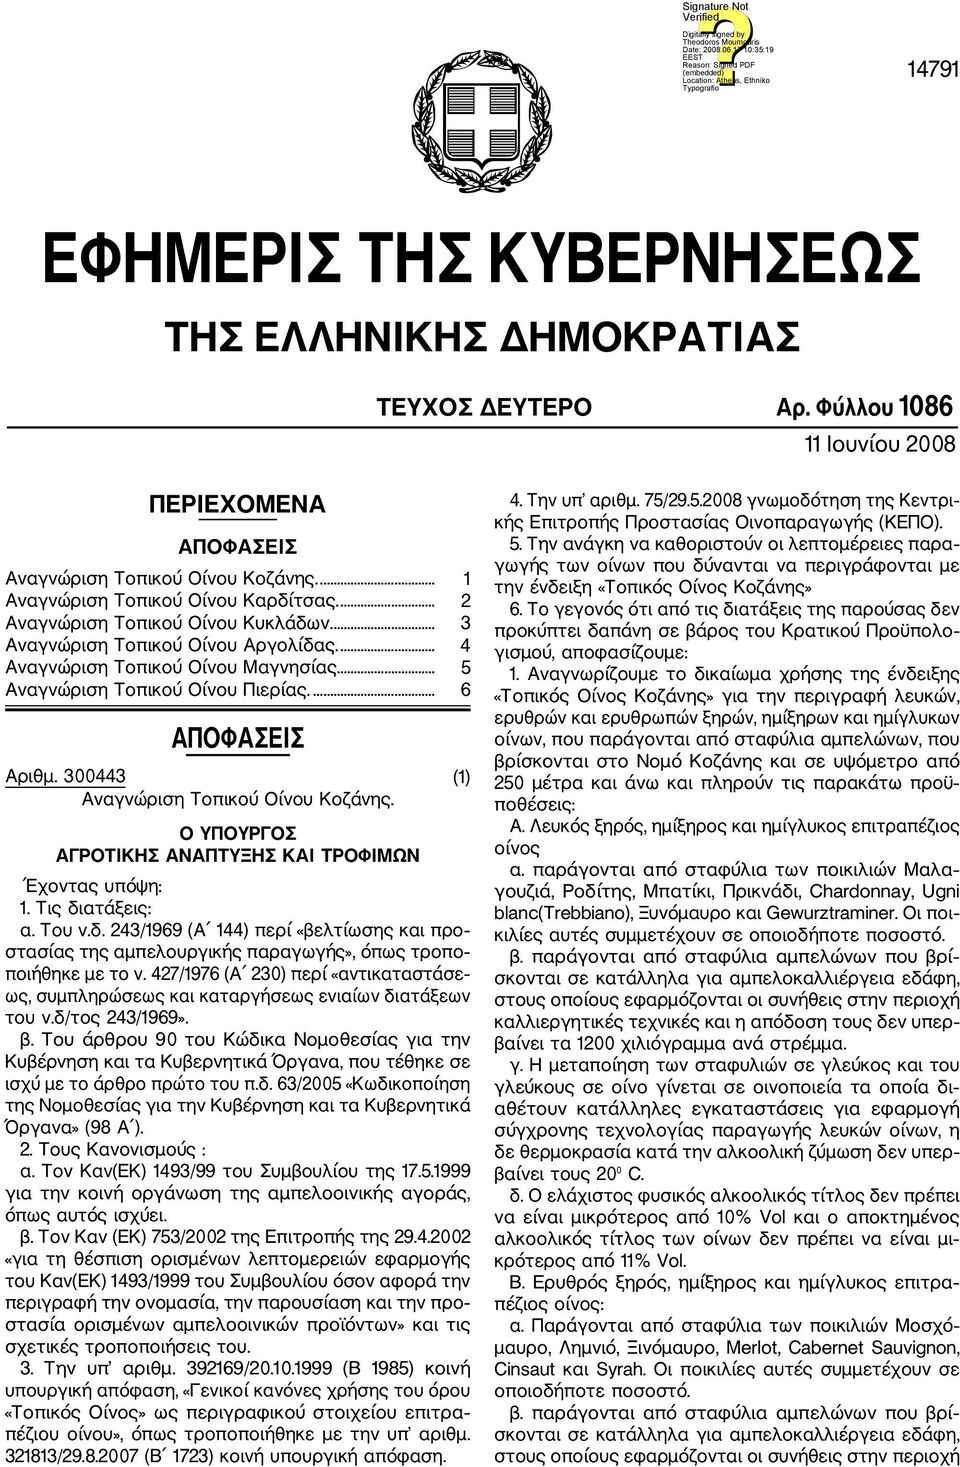 300443 (1) Αναγνώριση Τοπικού Οίνου Κοζάνης. α. Τον Καν(ΕΚ) 1493/99 του Συμβουλίου της 17.5.1999 β. Τον Καν (ΕΚ) 753/2002 της Επιτροπής της 29.4.2002 την ένδειξη «Τοπικός Οίνος Κοζάνης» «Τοπικός